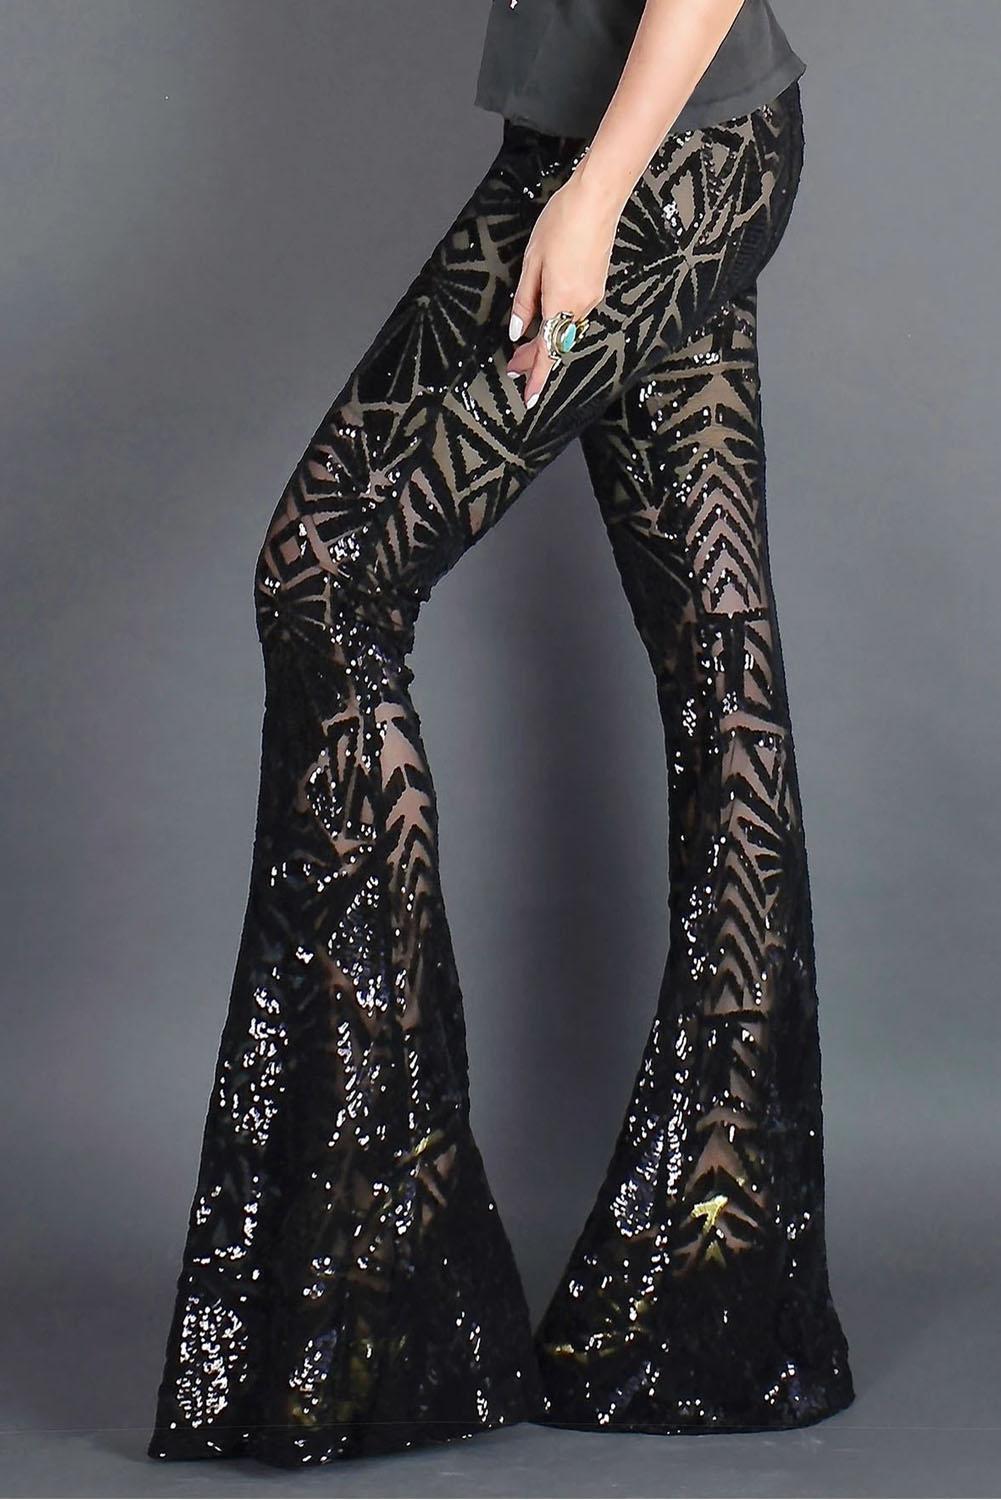 Бежево-черные блестящие брюки с абстрактным узором и клешем от колена арт.121828